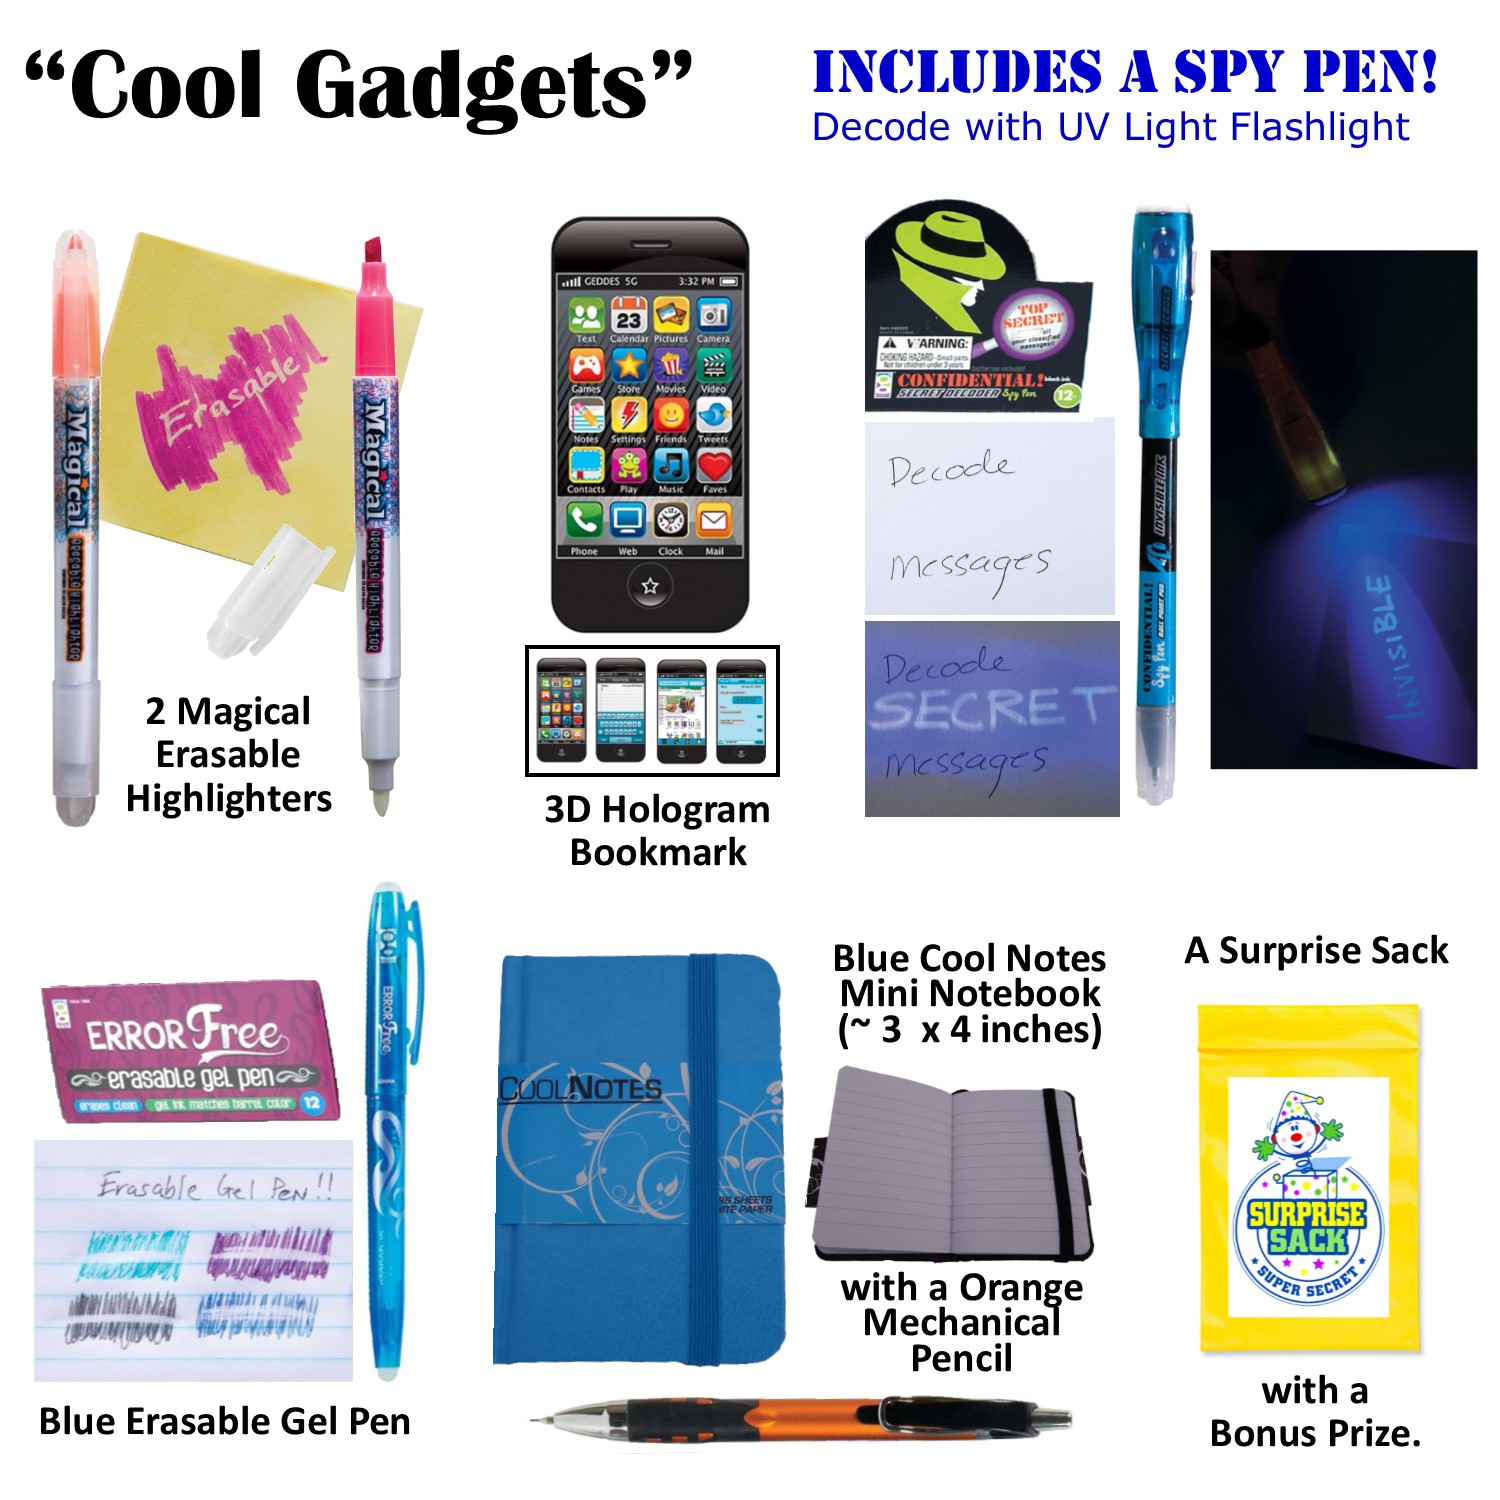 (TM) (Cool Blue Accessories-Pencils, Surprise Surprise Pouch) Themed Stationary Secret - Secret Pens, Gadgets Sack & Sack - - 1 Erasers Kids